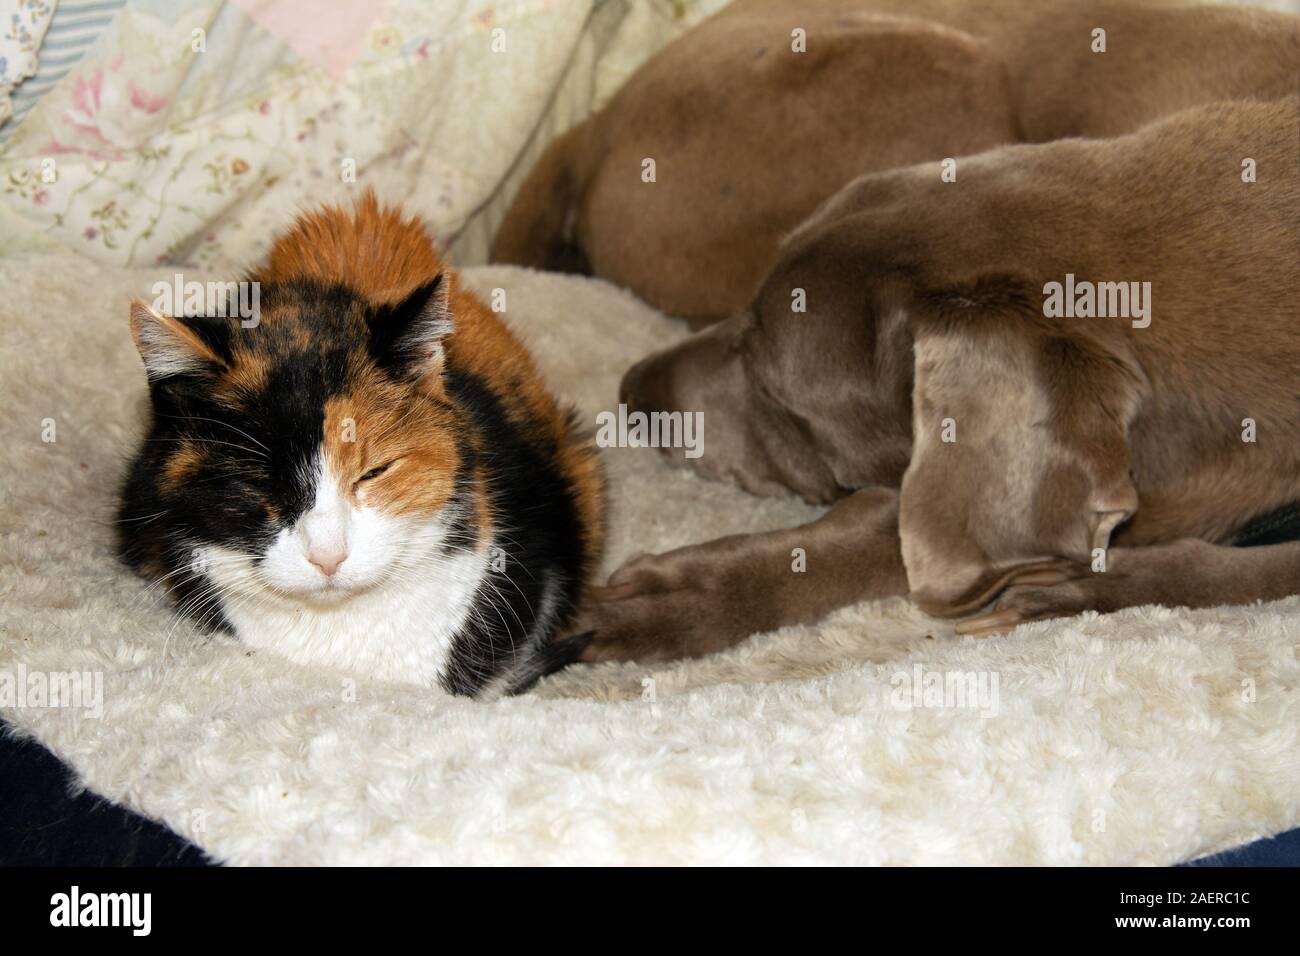 Vecchia gatta calico e un vecchio cane Weimaraner condividendo un cane letto, fianco a fianco Foto Stock